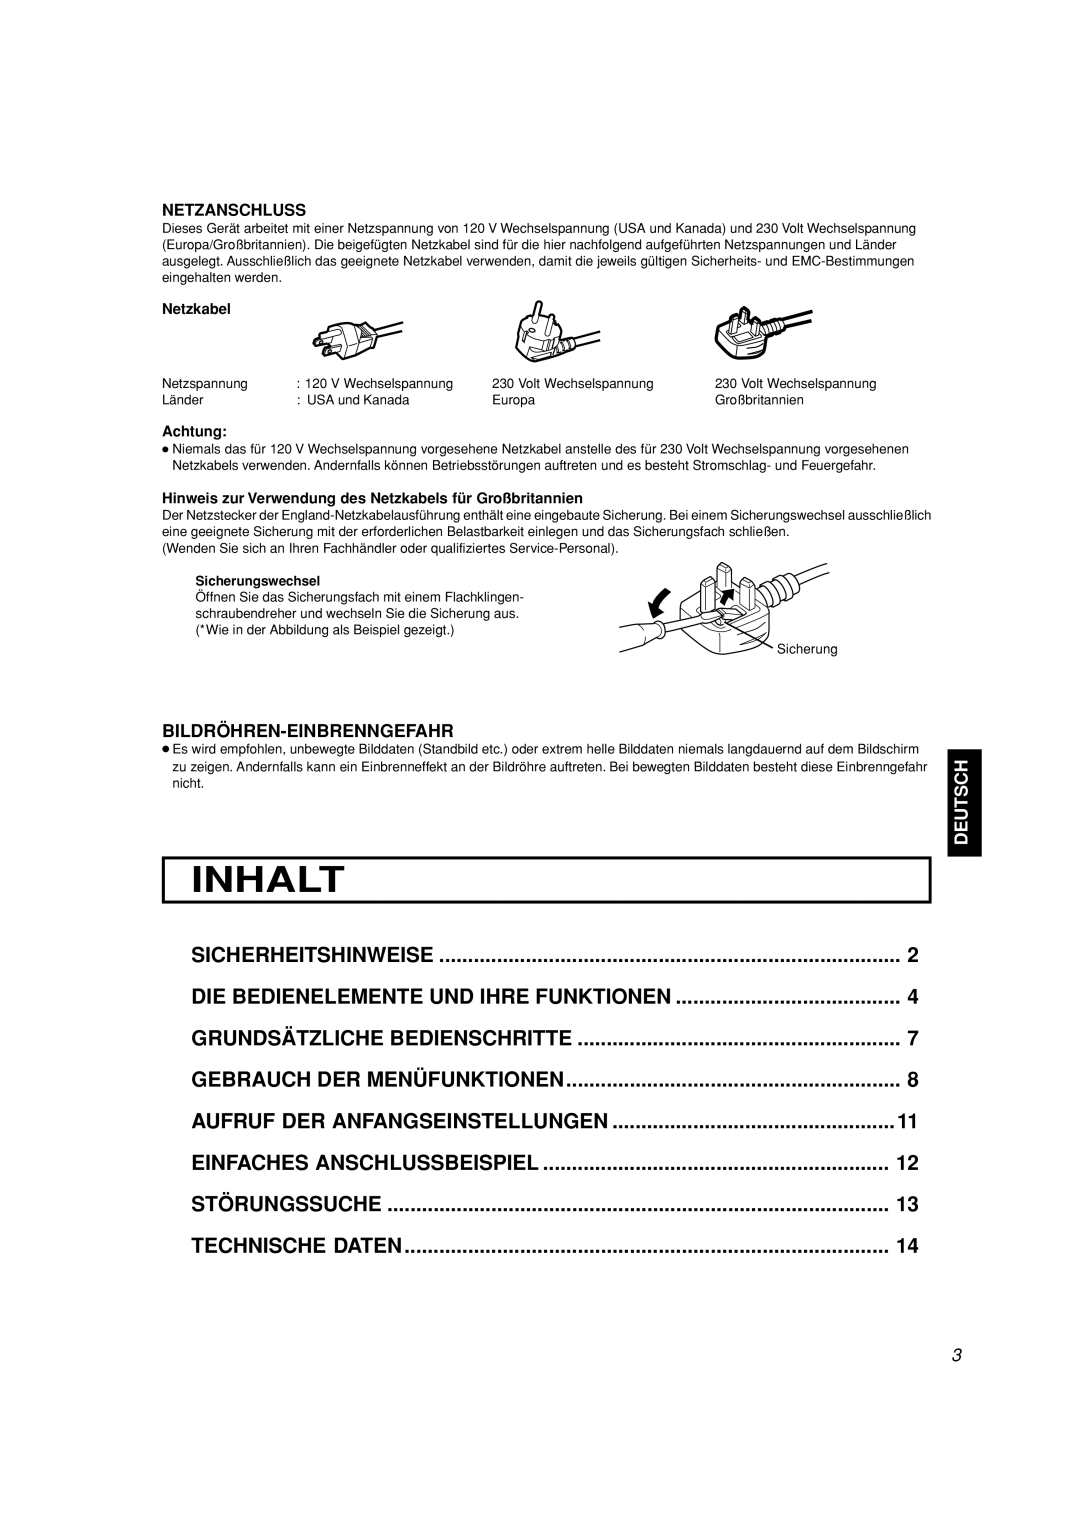 JVC TM-A101G manual Inhalt, Sicherheitshinweise, Grundsätzliche Bedienschritte, Gebrauch Der Menüfunktionen, Störungssuche 